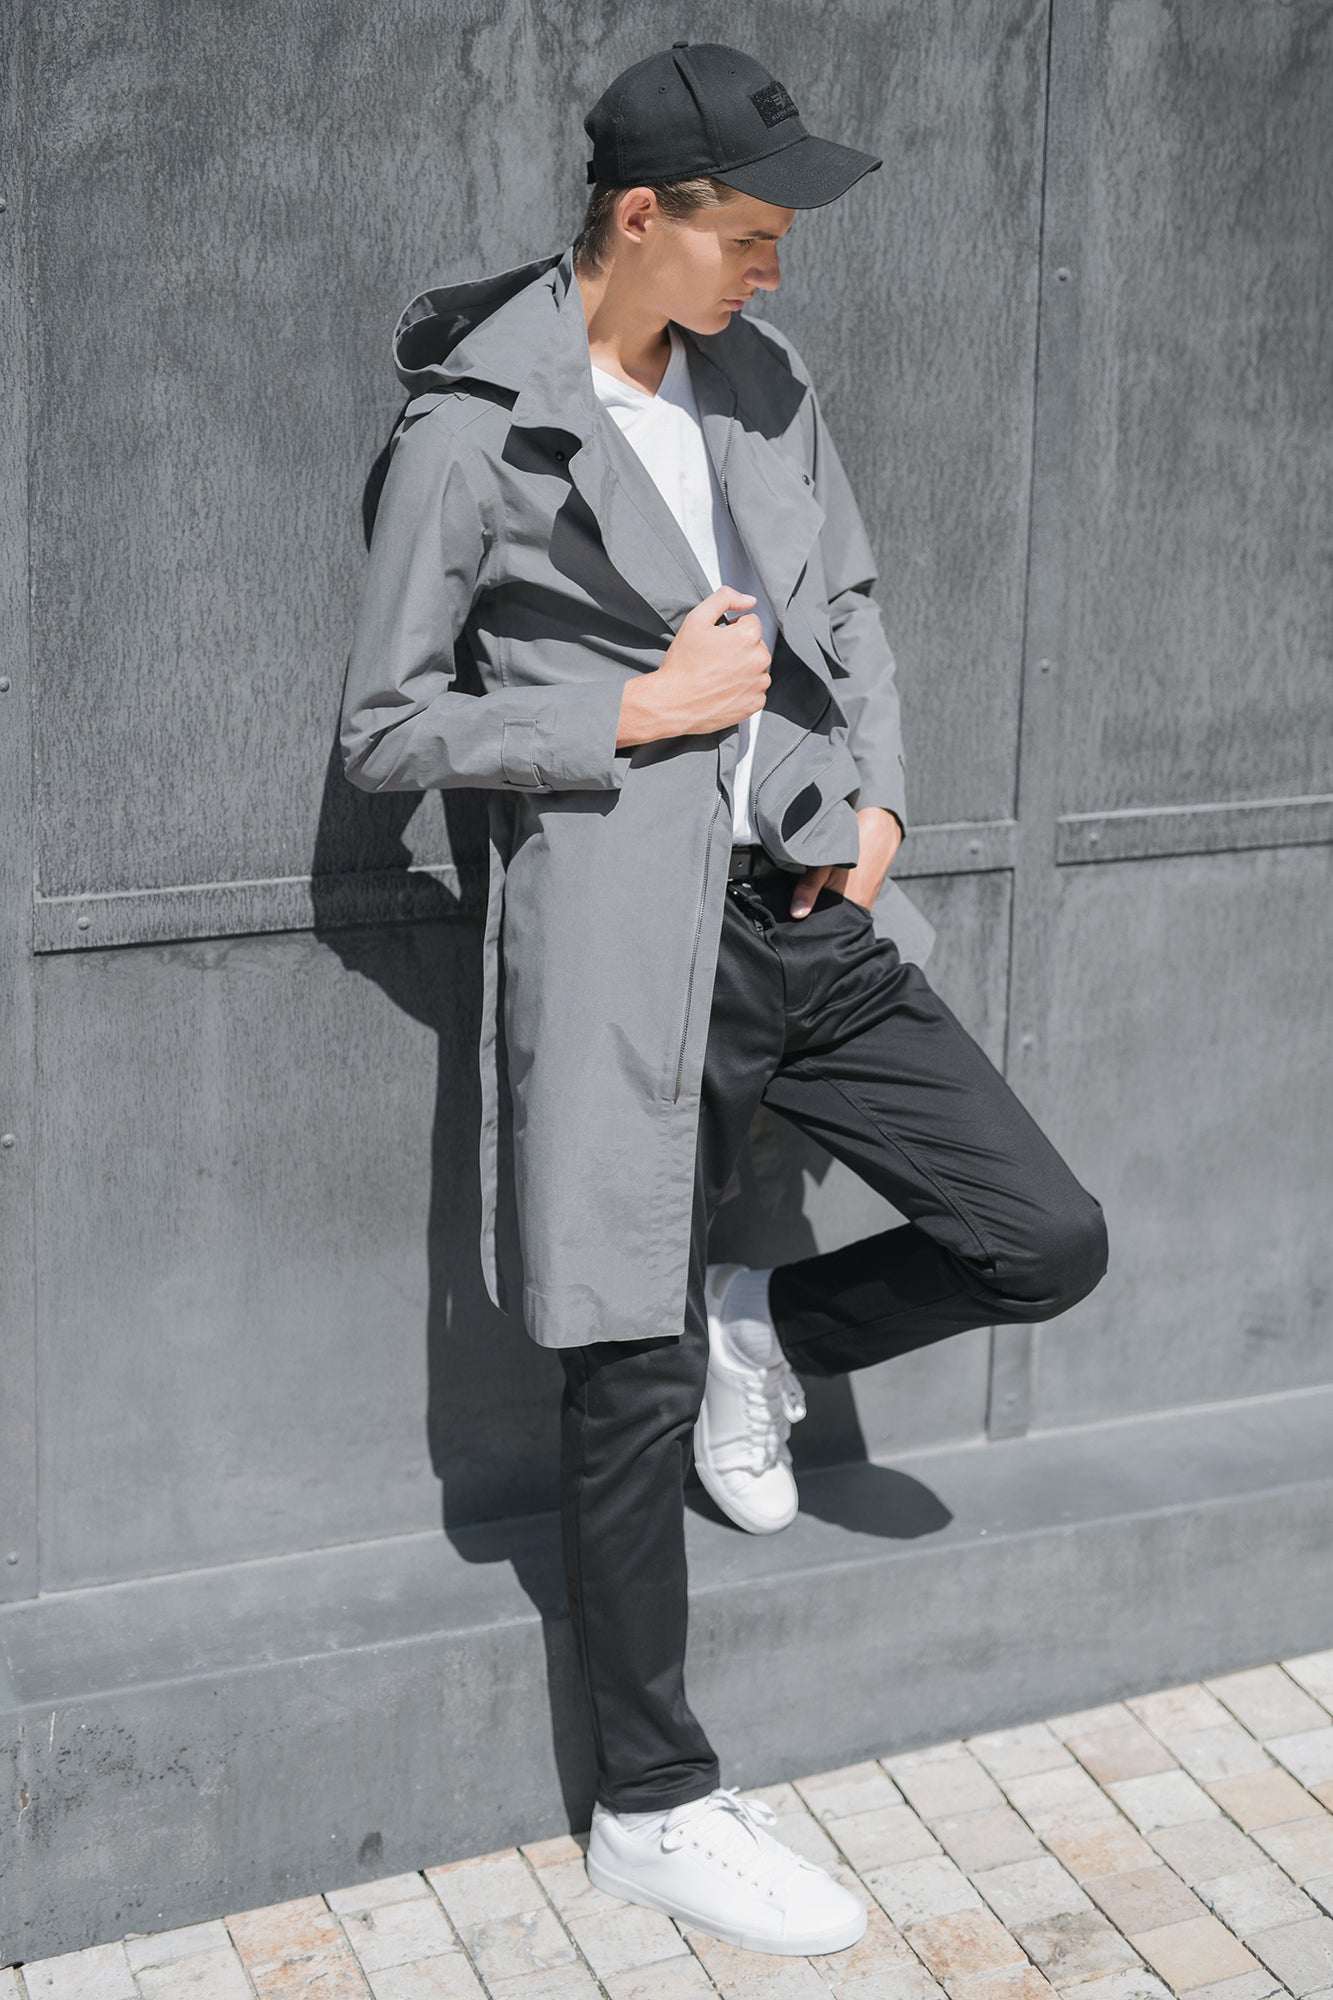 ZIPPER TRENCH COAT - grey raincoat for men